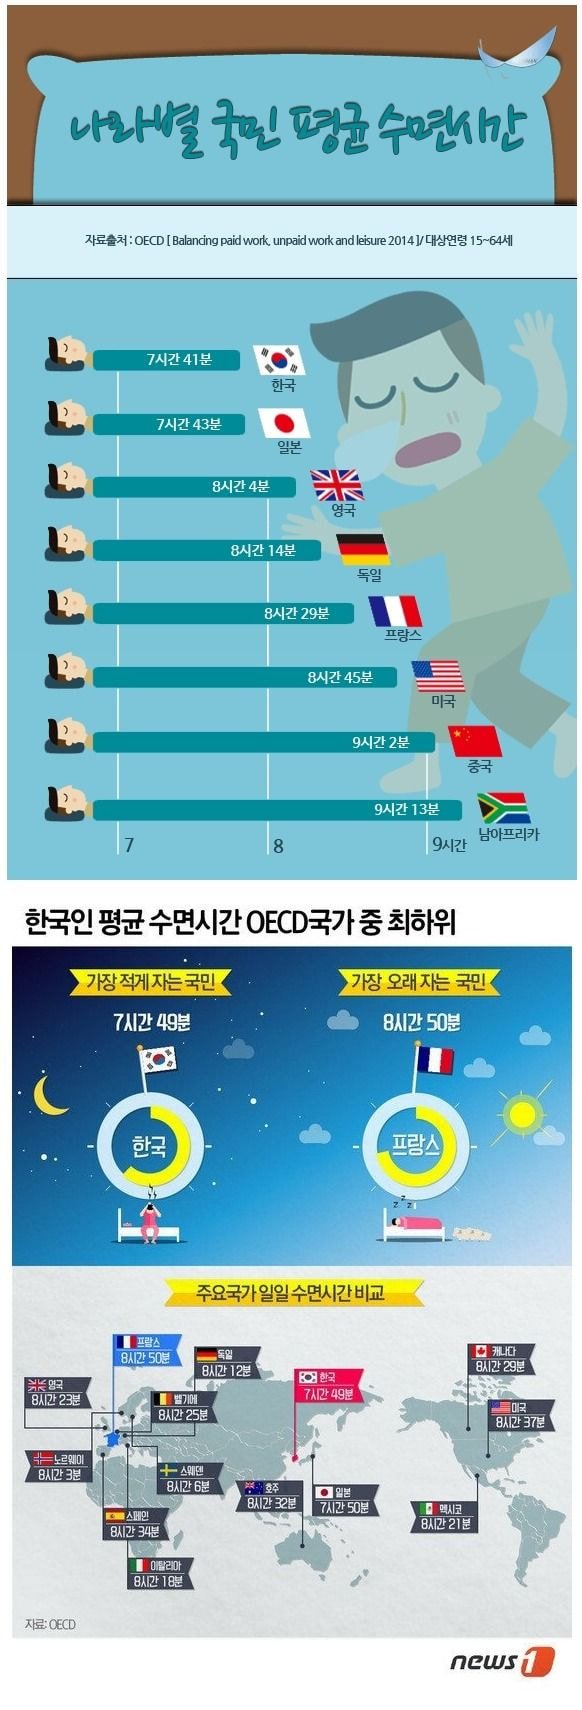 나라별 국민 평균 수면 시간